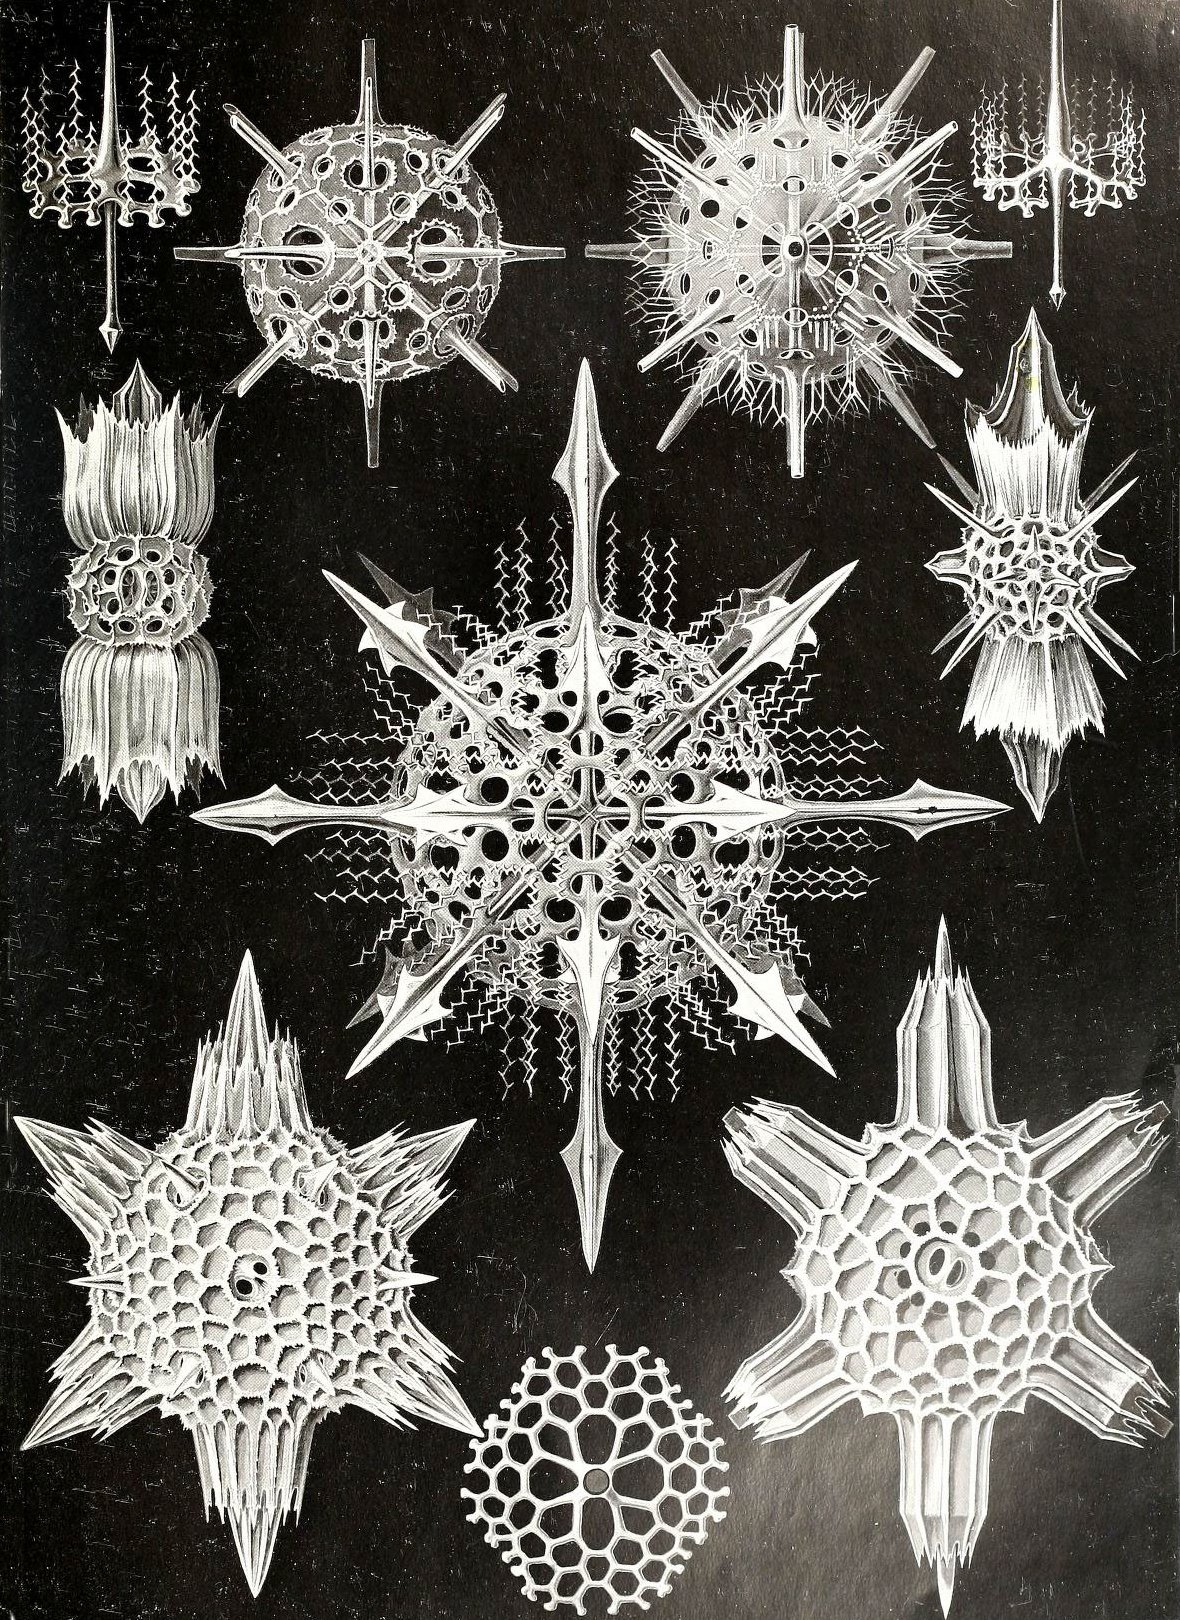 Strahlentierchen (Radiolarien) aus "Kunstformen der Natur" von Ernst Haeckel, 1904